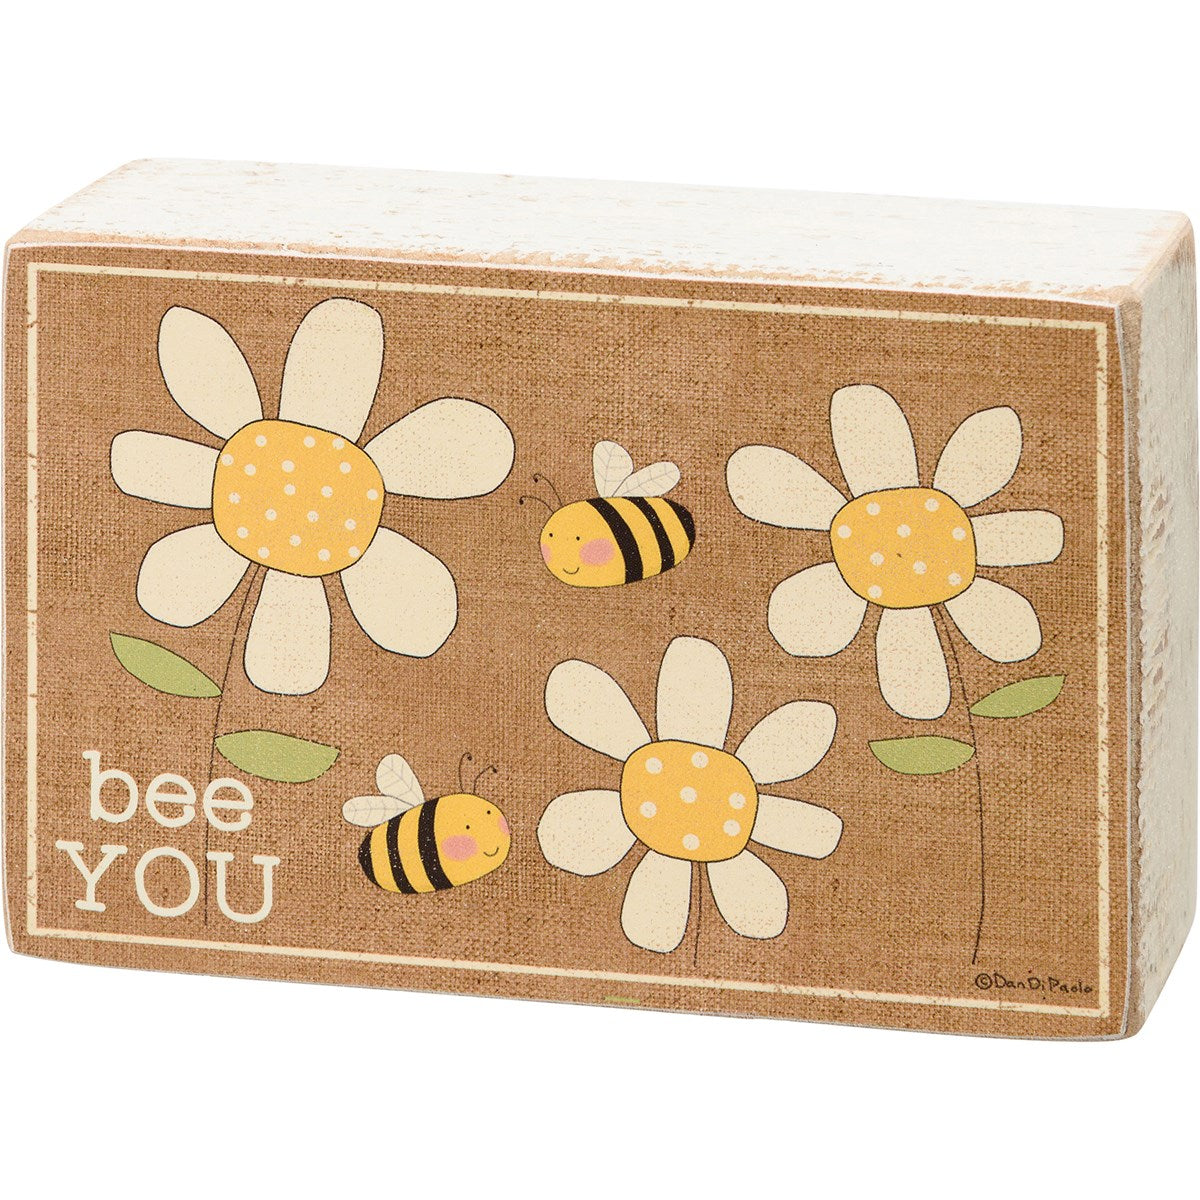 Socks & Box Sign Set "Bee You"